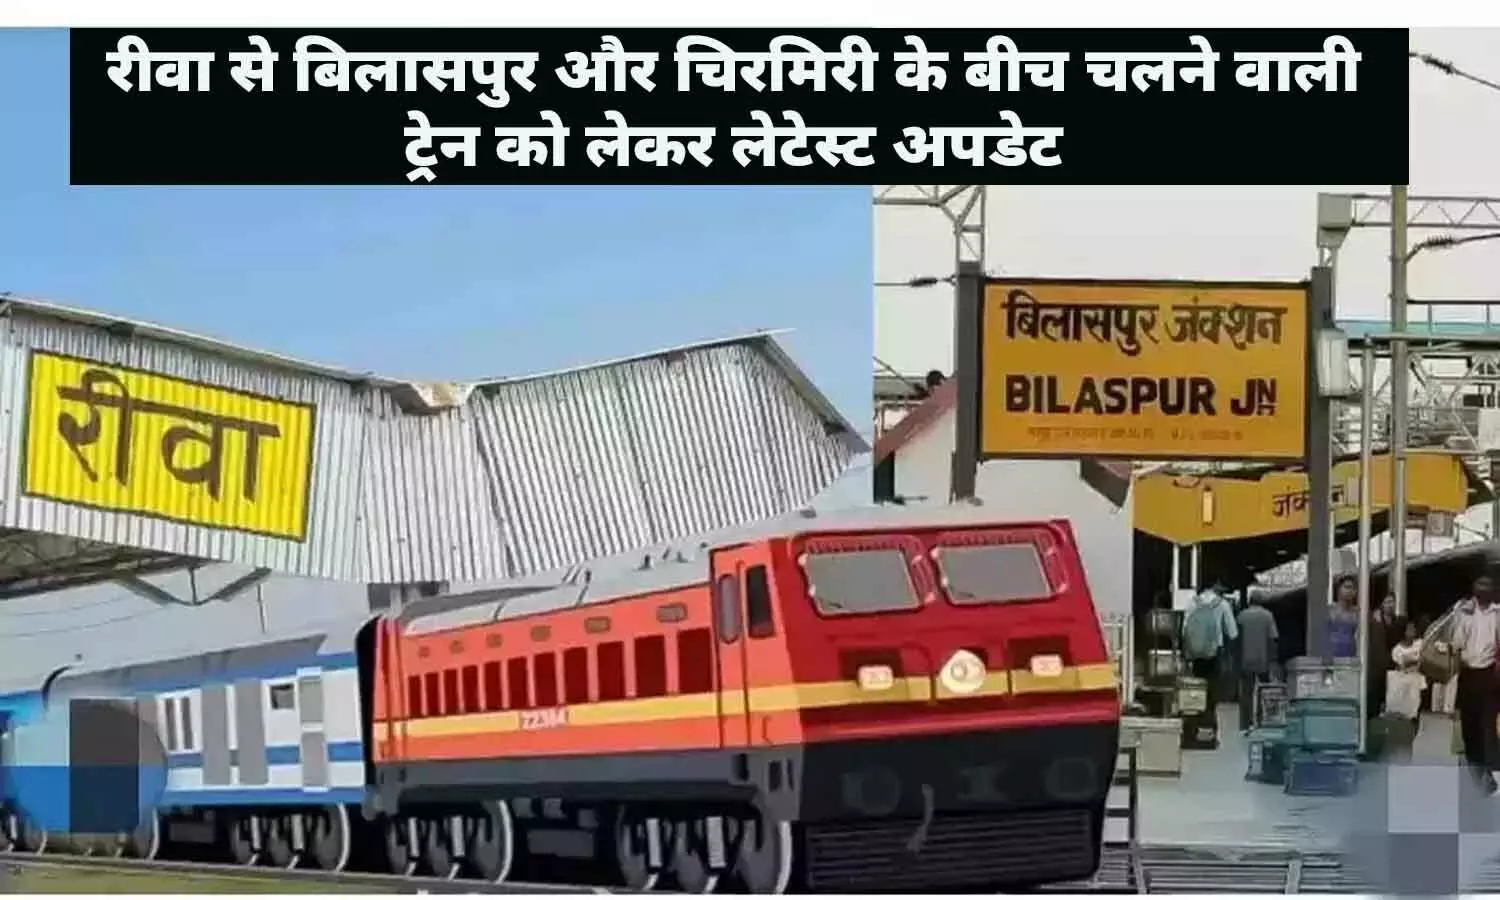 रीवा से बिलासपुर और चिरमिरी के बीच चलने वाली ट्रेन को लेकर Latest Update, यात्रीगण तुरंत ध्यान दे